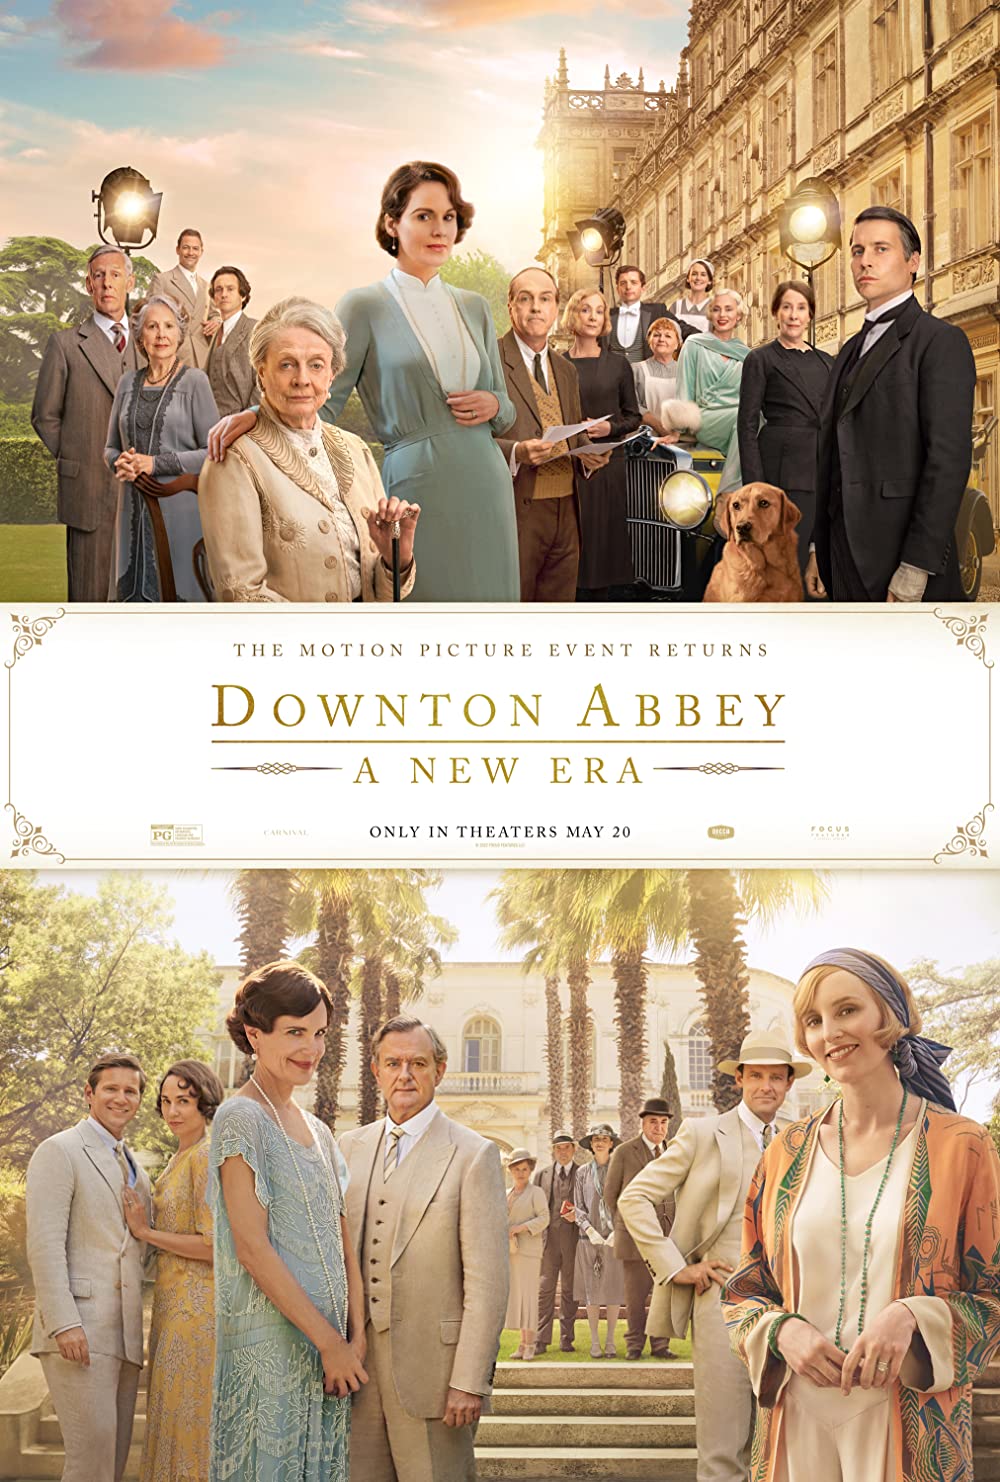 Downton Abbey: A New Era (2022) 7:30 P.M. @ O'Brien Theatre in Renfrew